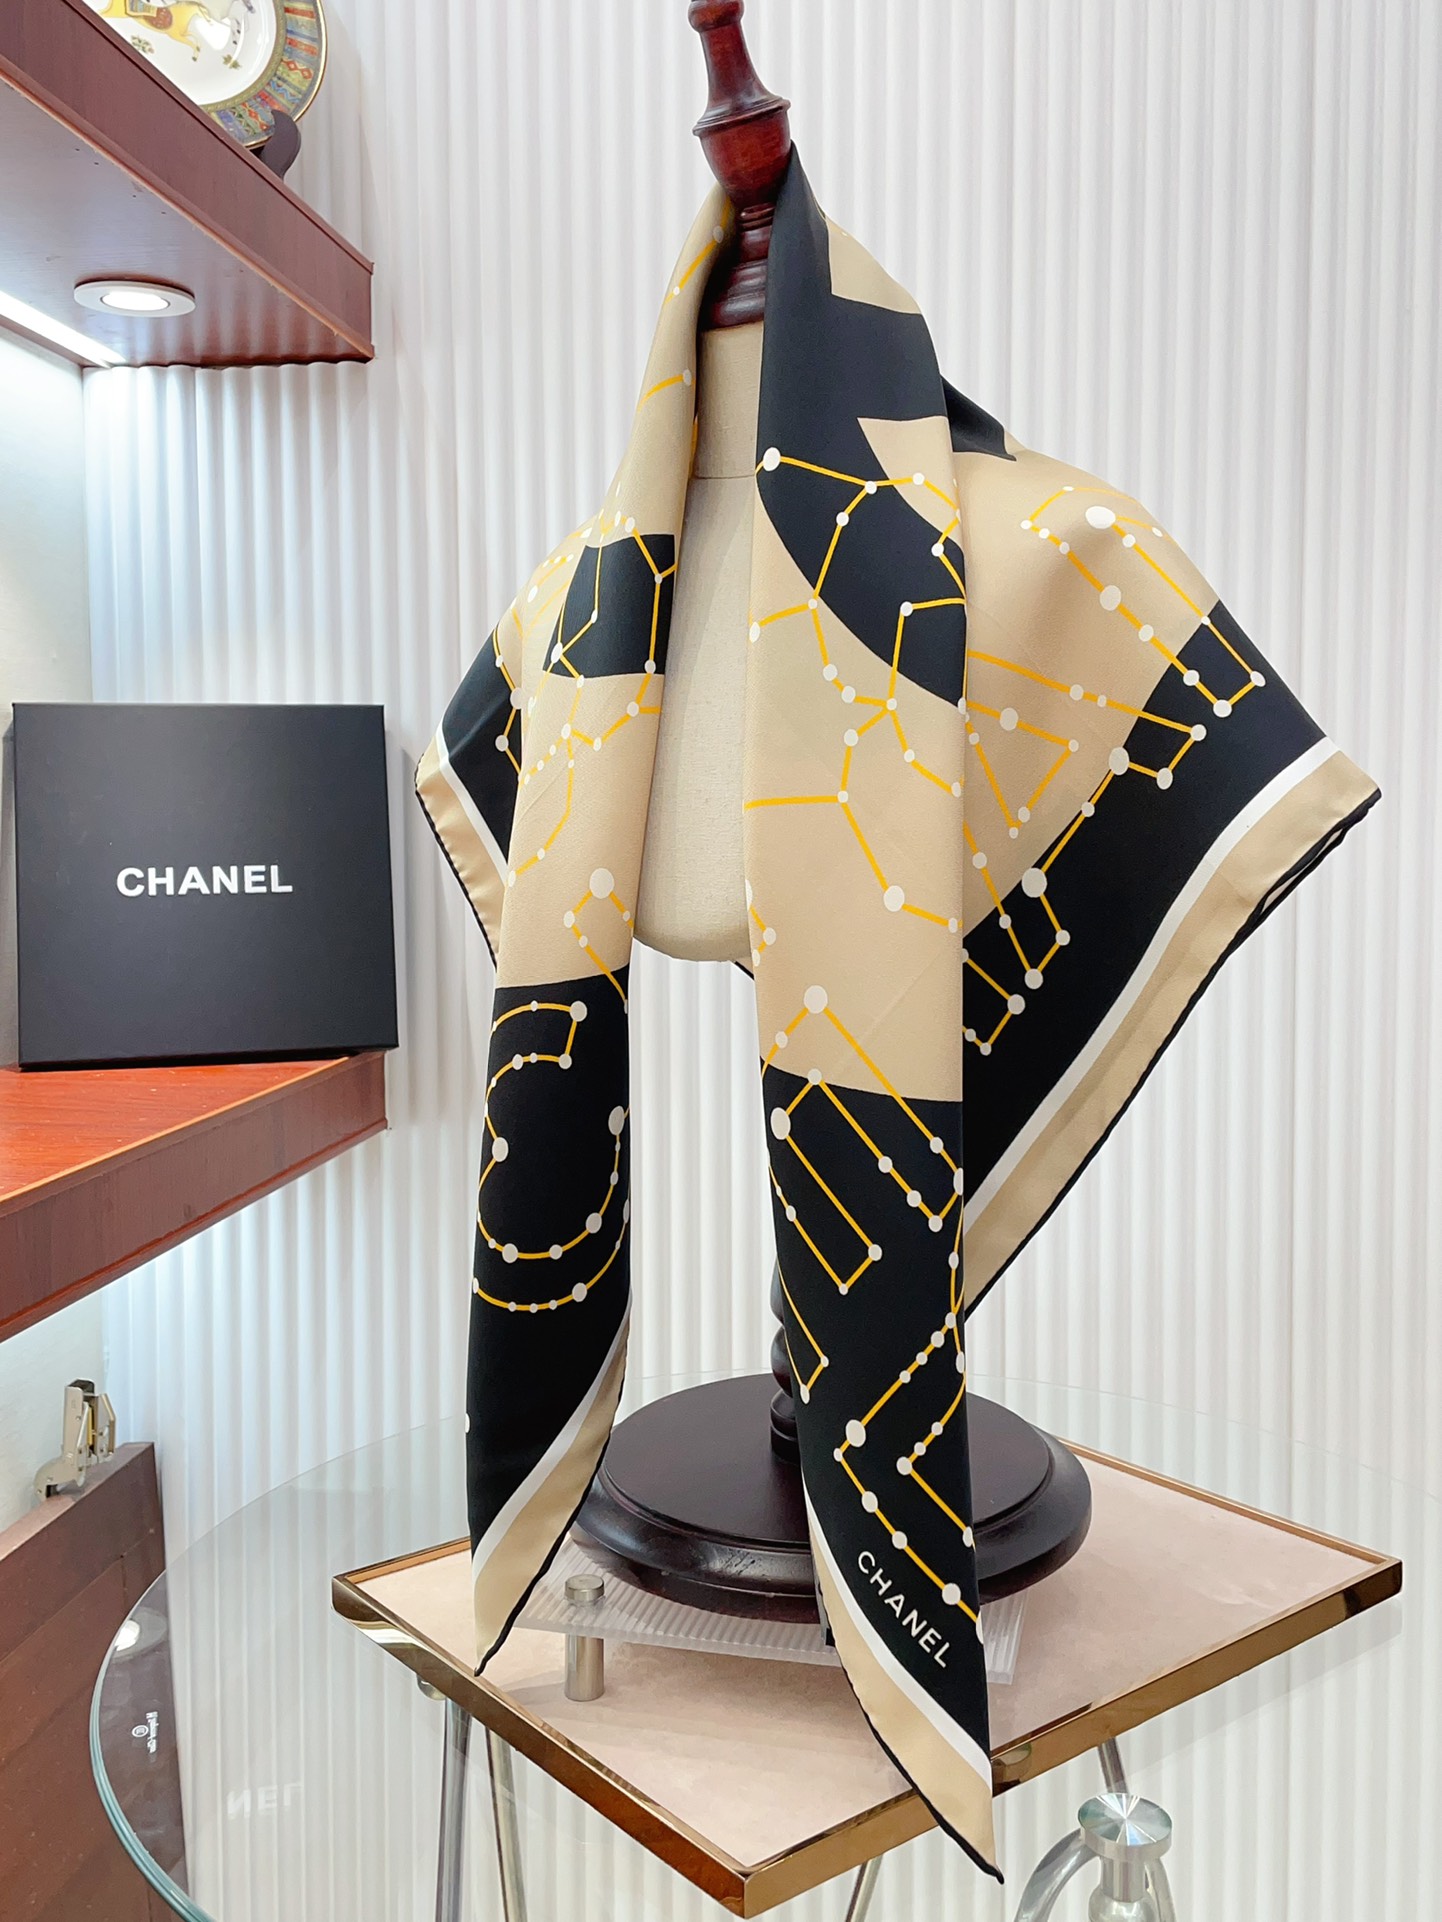 シャネルスカーフ激安通販 シルク 人気定番 美しい ロゴマーク シンプル ファッション レディース ブラウン_8